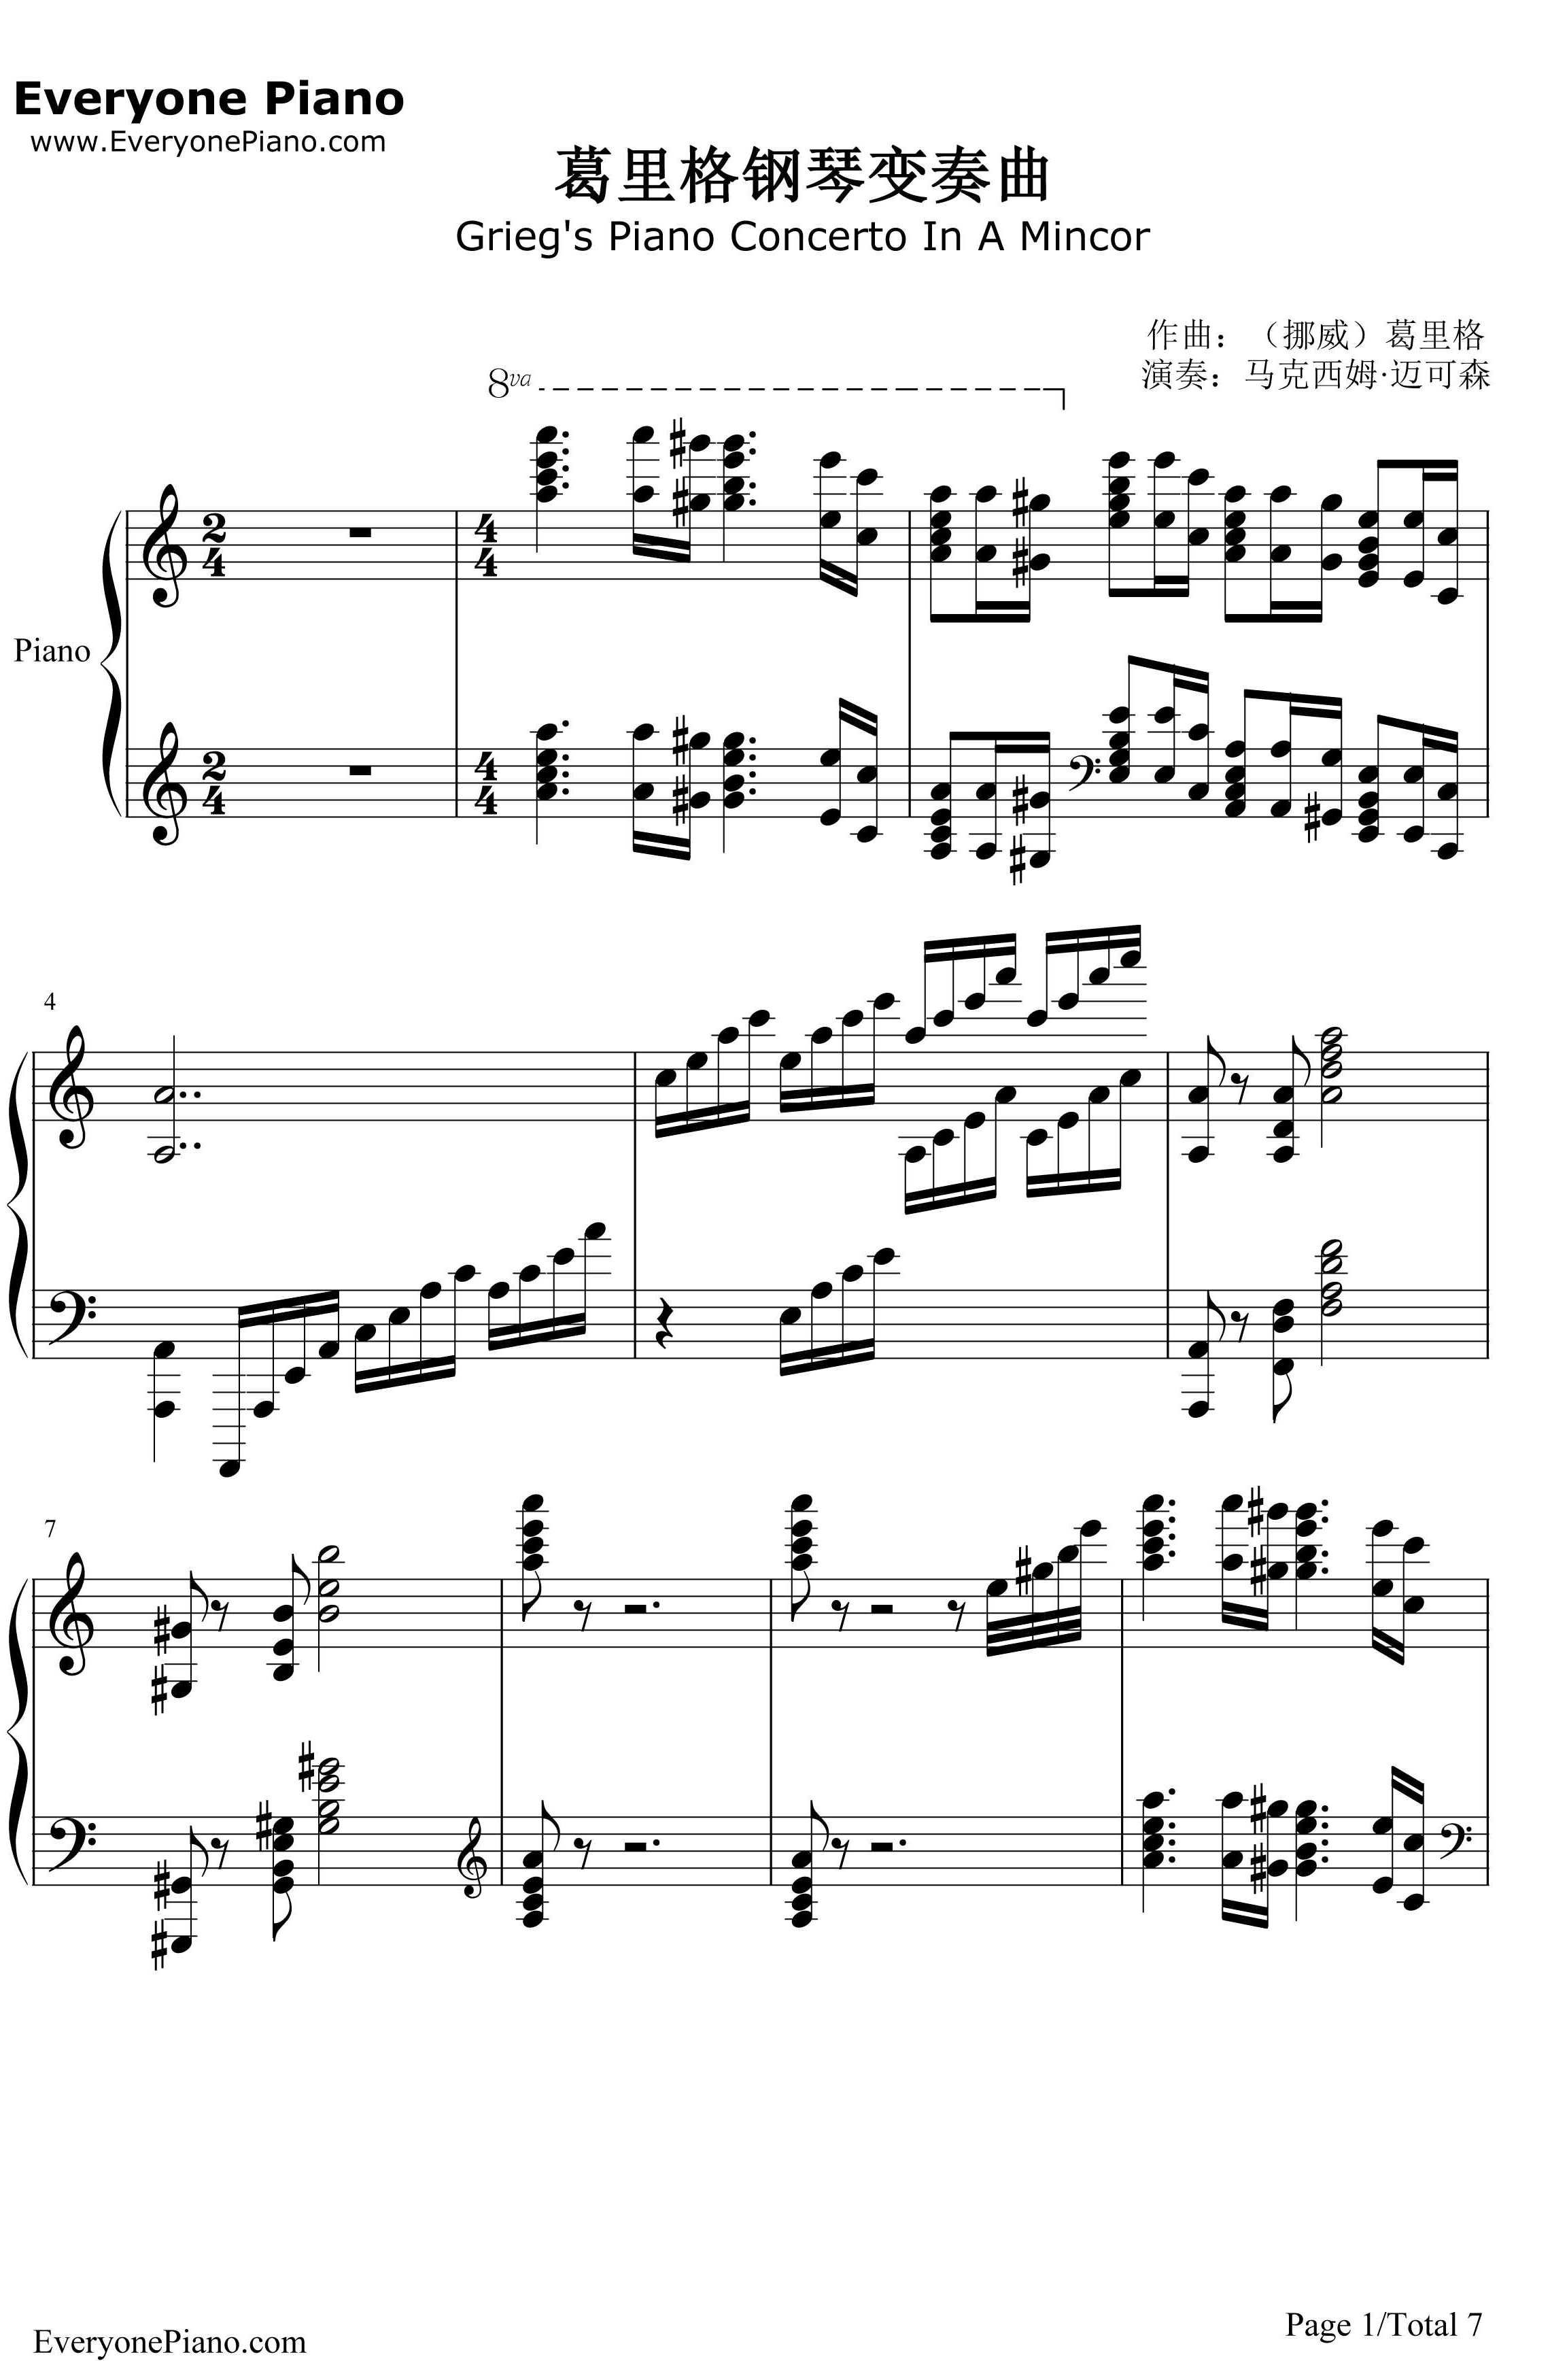 葛里格钢琴变奏曲钢琴谱-爱德华·格里格1